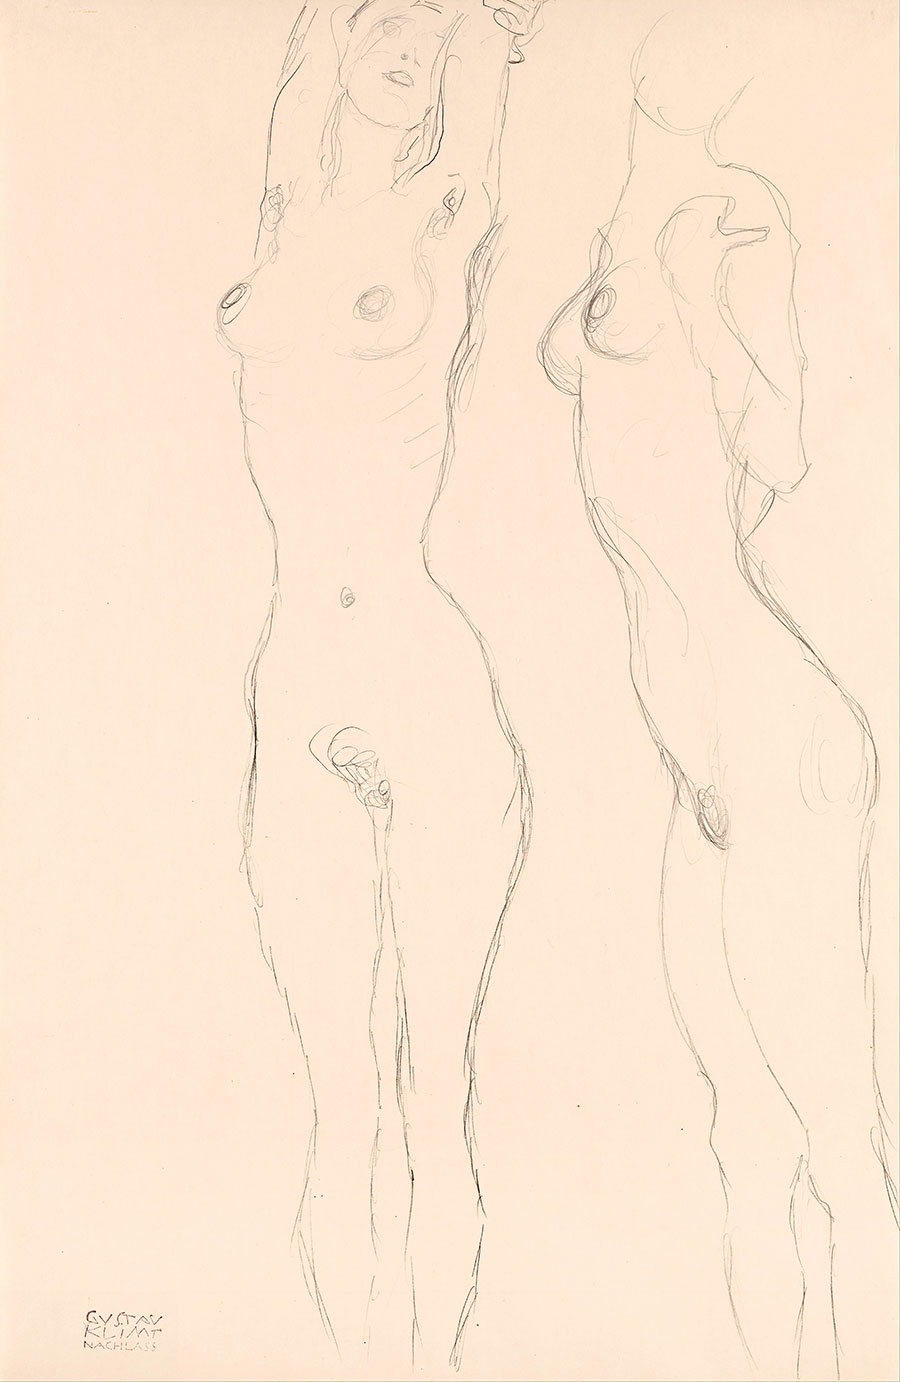 克里姆特素描: 裸女习作  侧身